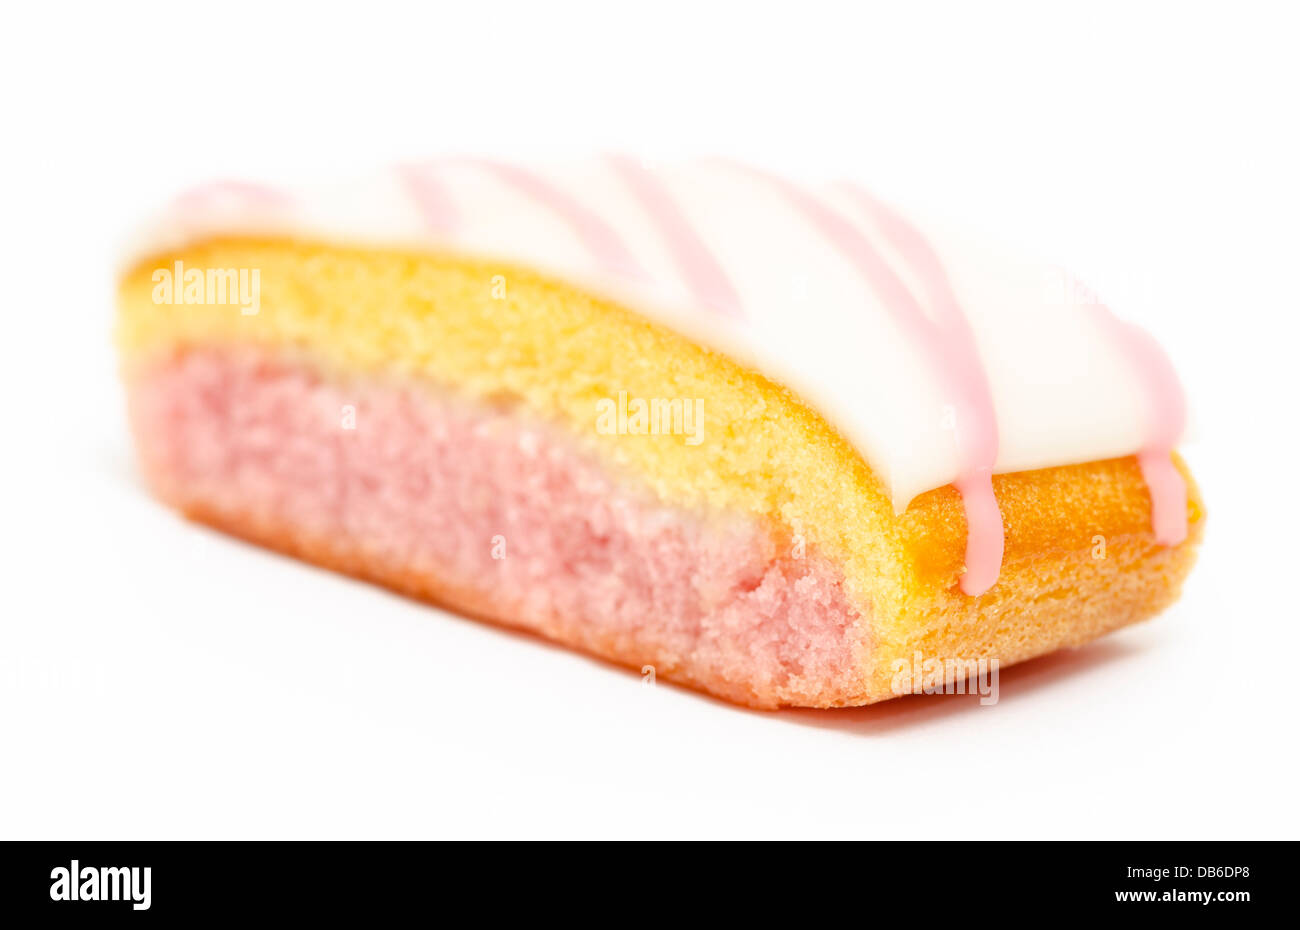 Angel cake slice Stock Photo - Alamy